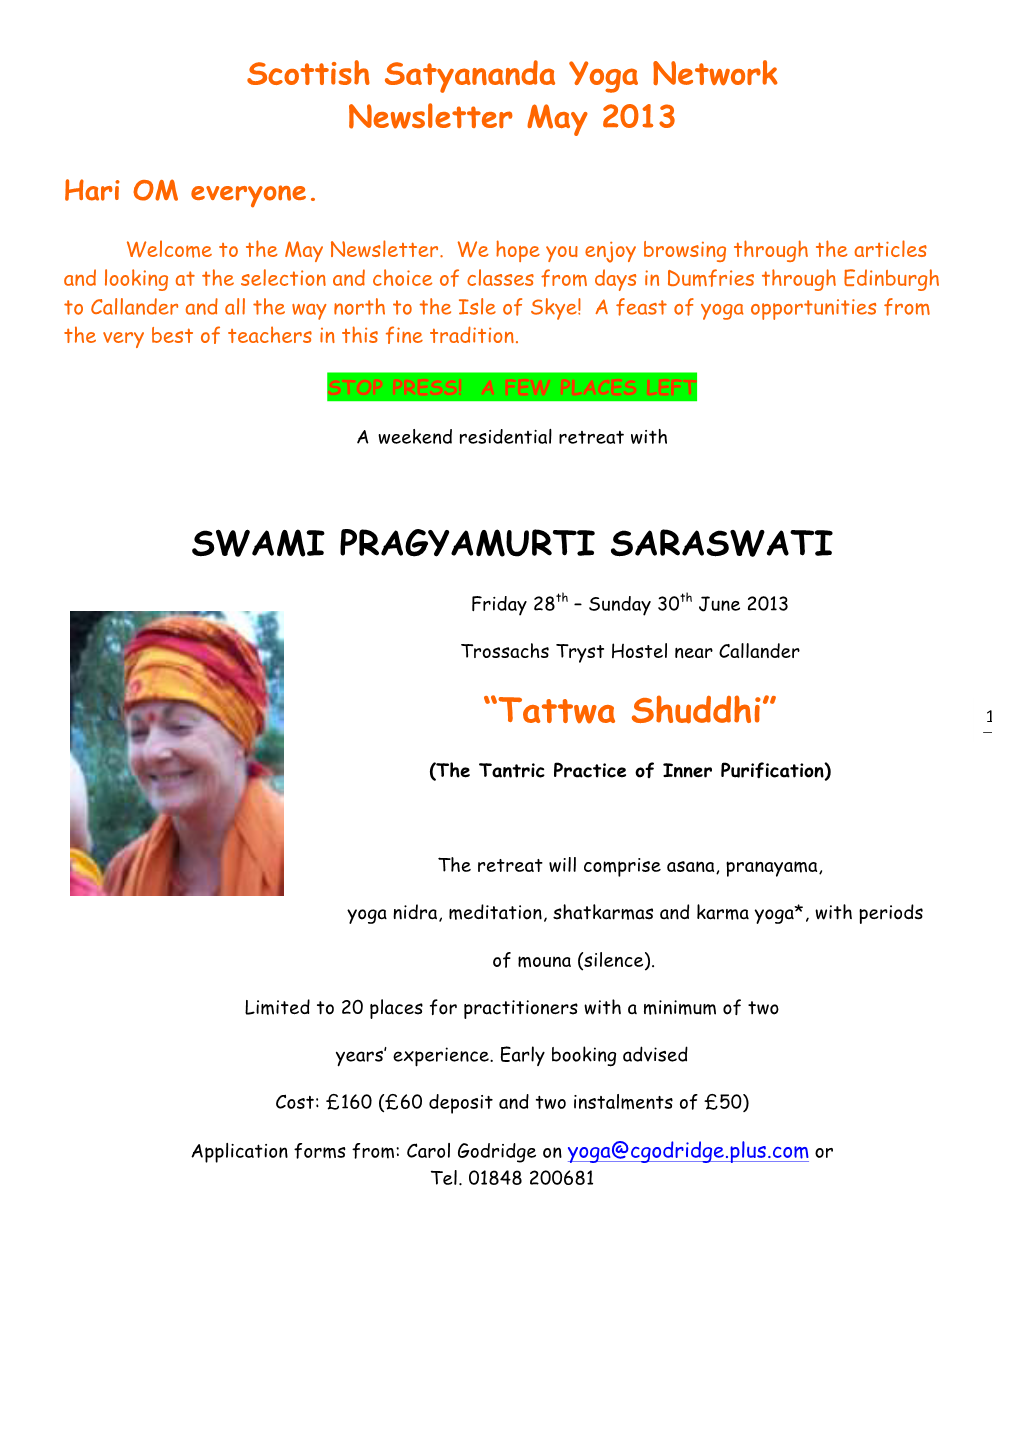 Swami Pragyamurti Saraswati